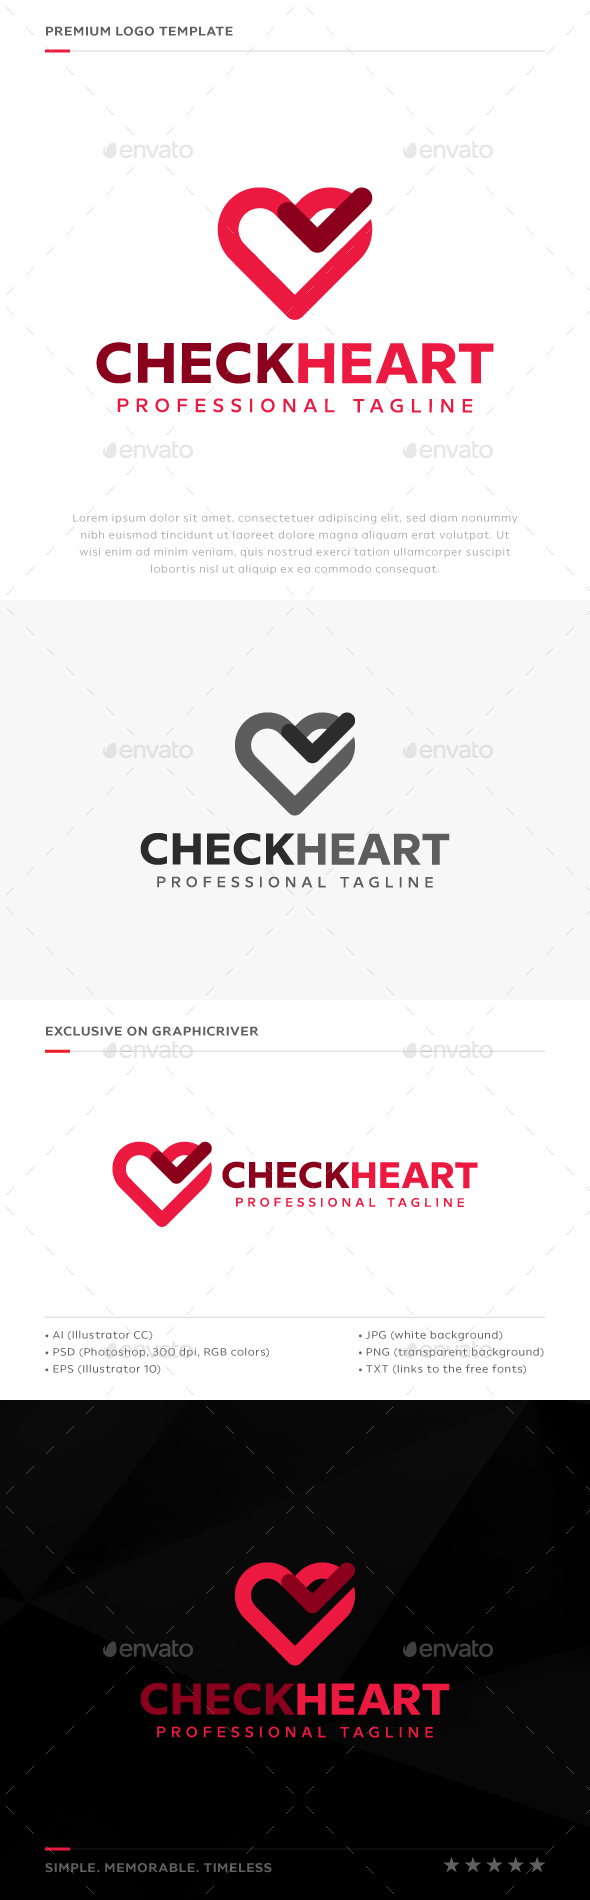 Check Heart Logo